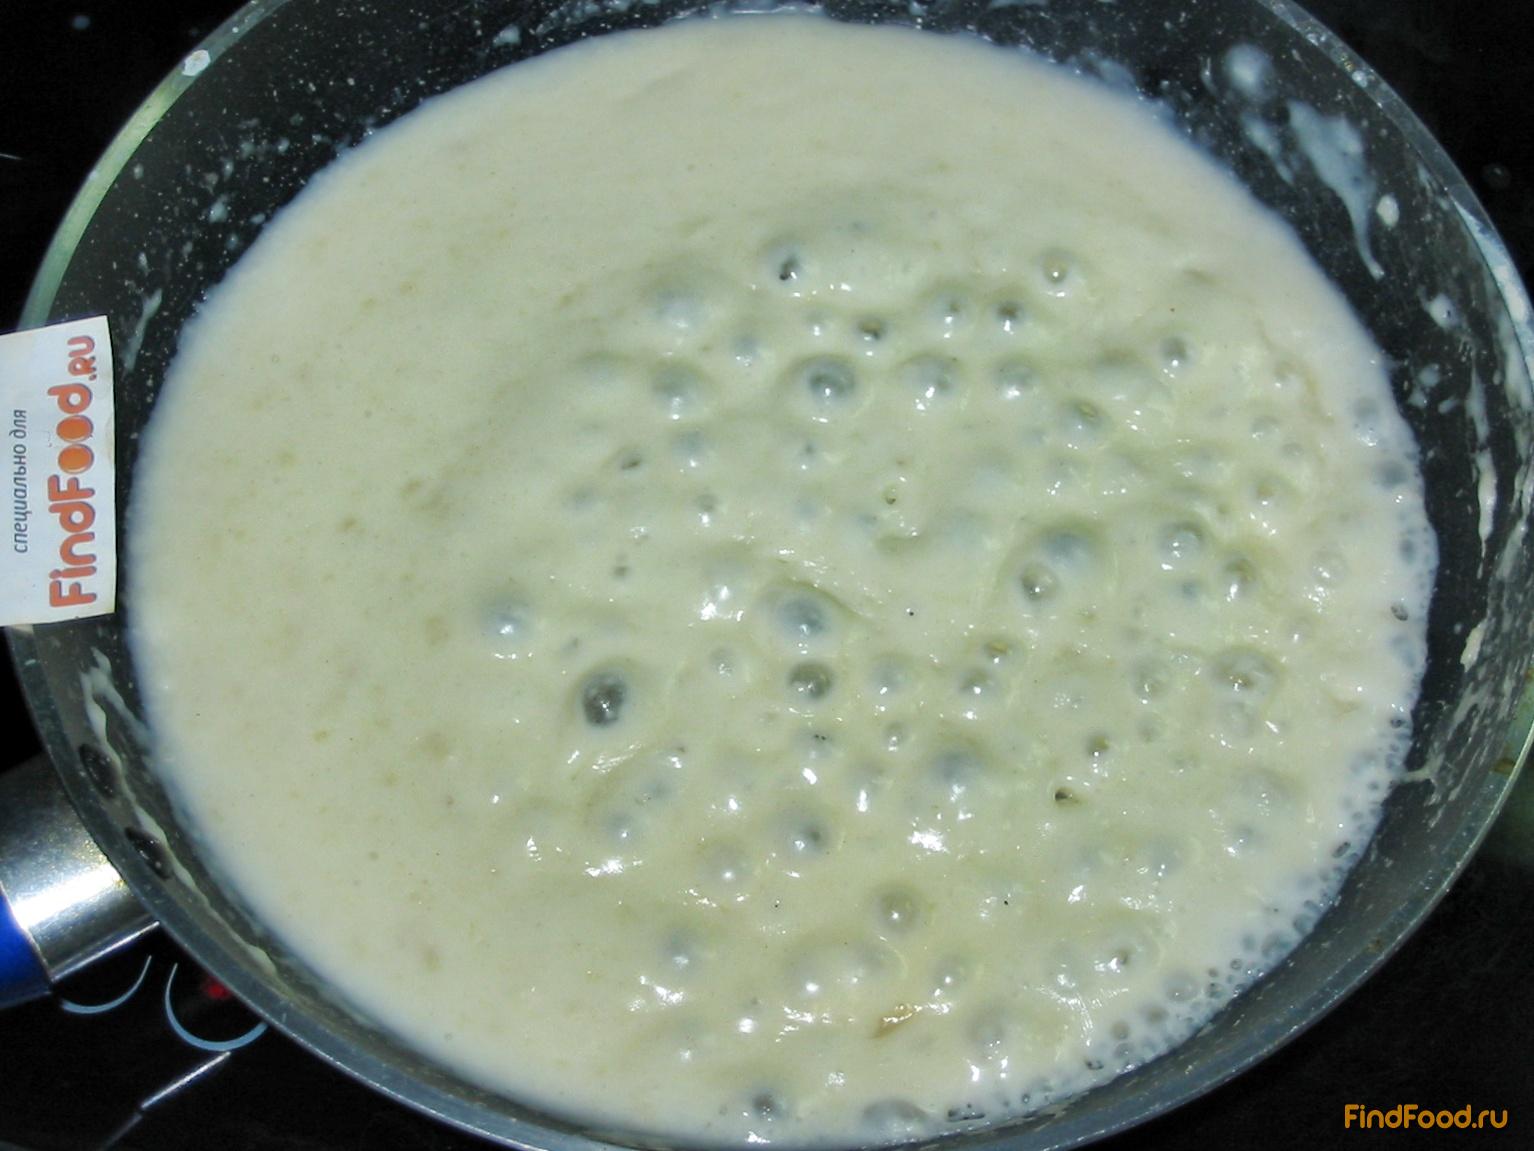 Цветная капуста в сырном соусе рецепт с фото 7-го шага 